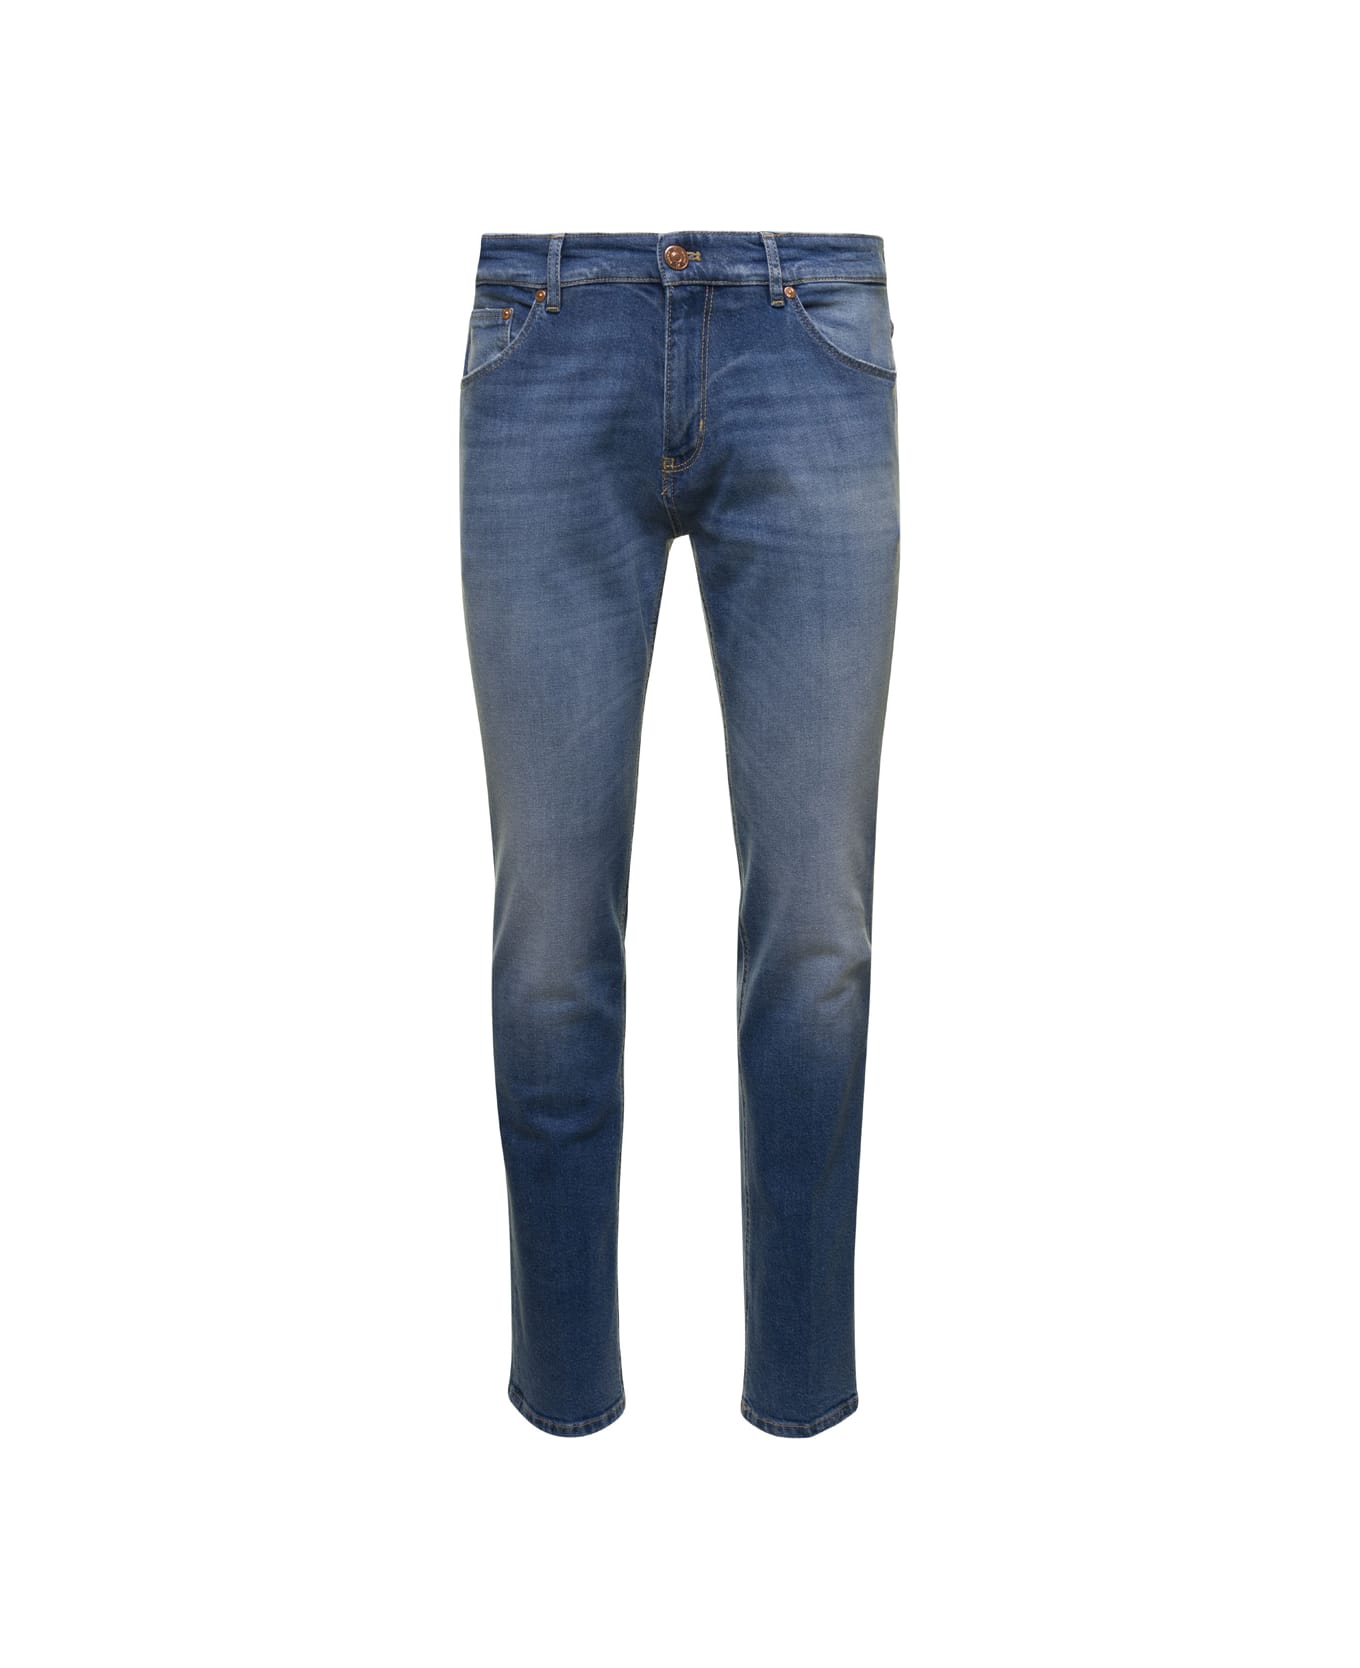 PT Torino Blue Medium Waist Slim Jeans In Cotton Blend Man - Blu デニム